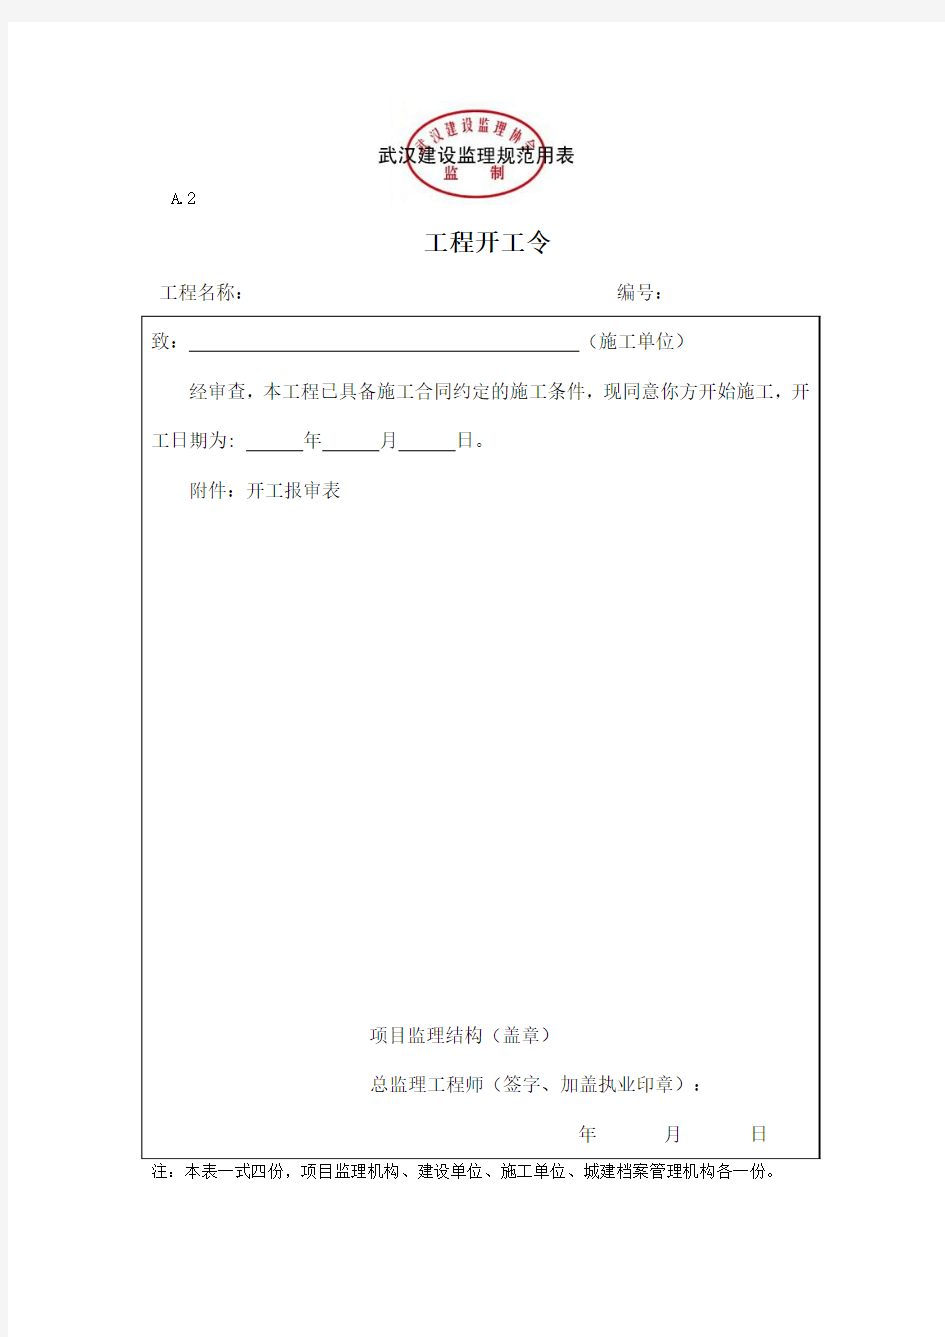 武汉新版建设工程监理规范GB50319-2013基本表式A表